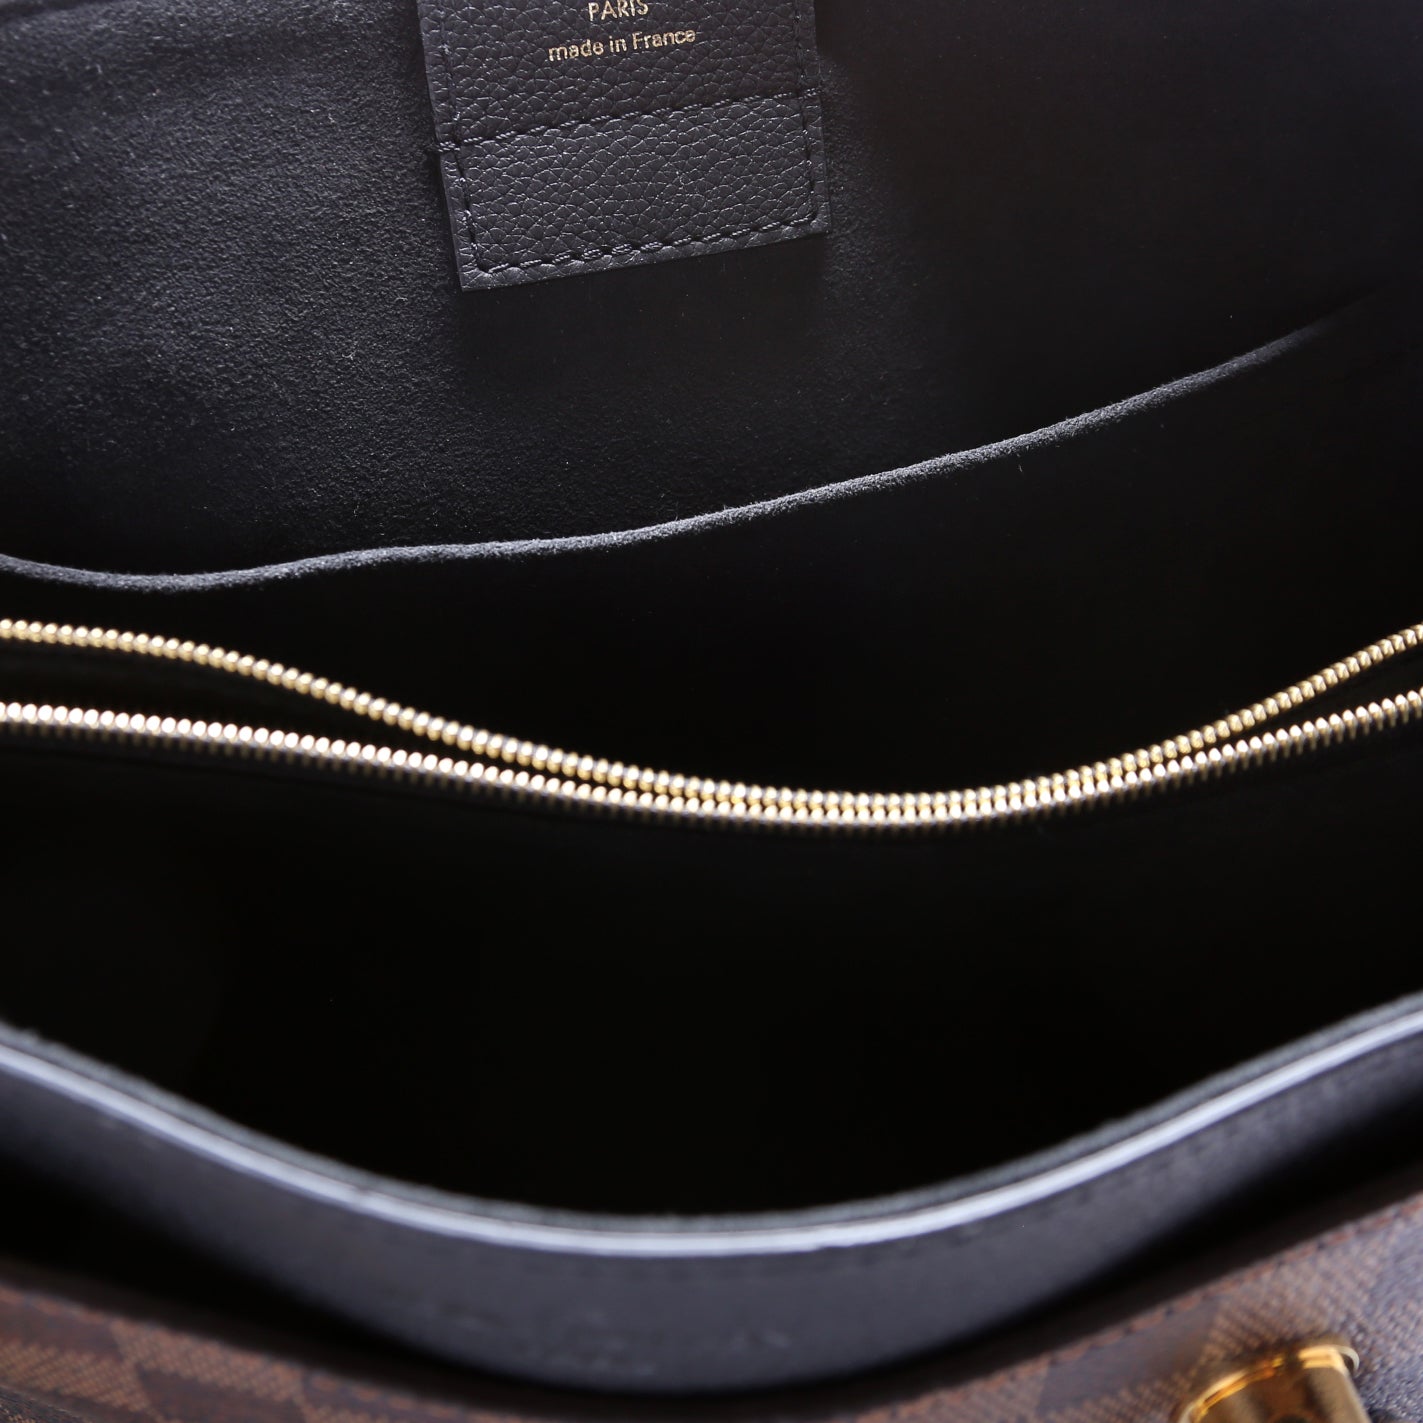 Riverside Damier Ebene – Keeks Designer Handbags